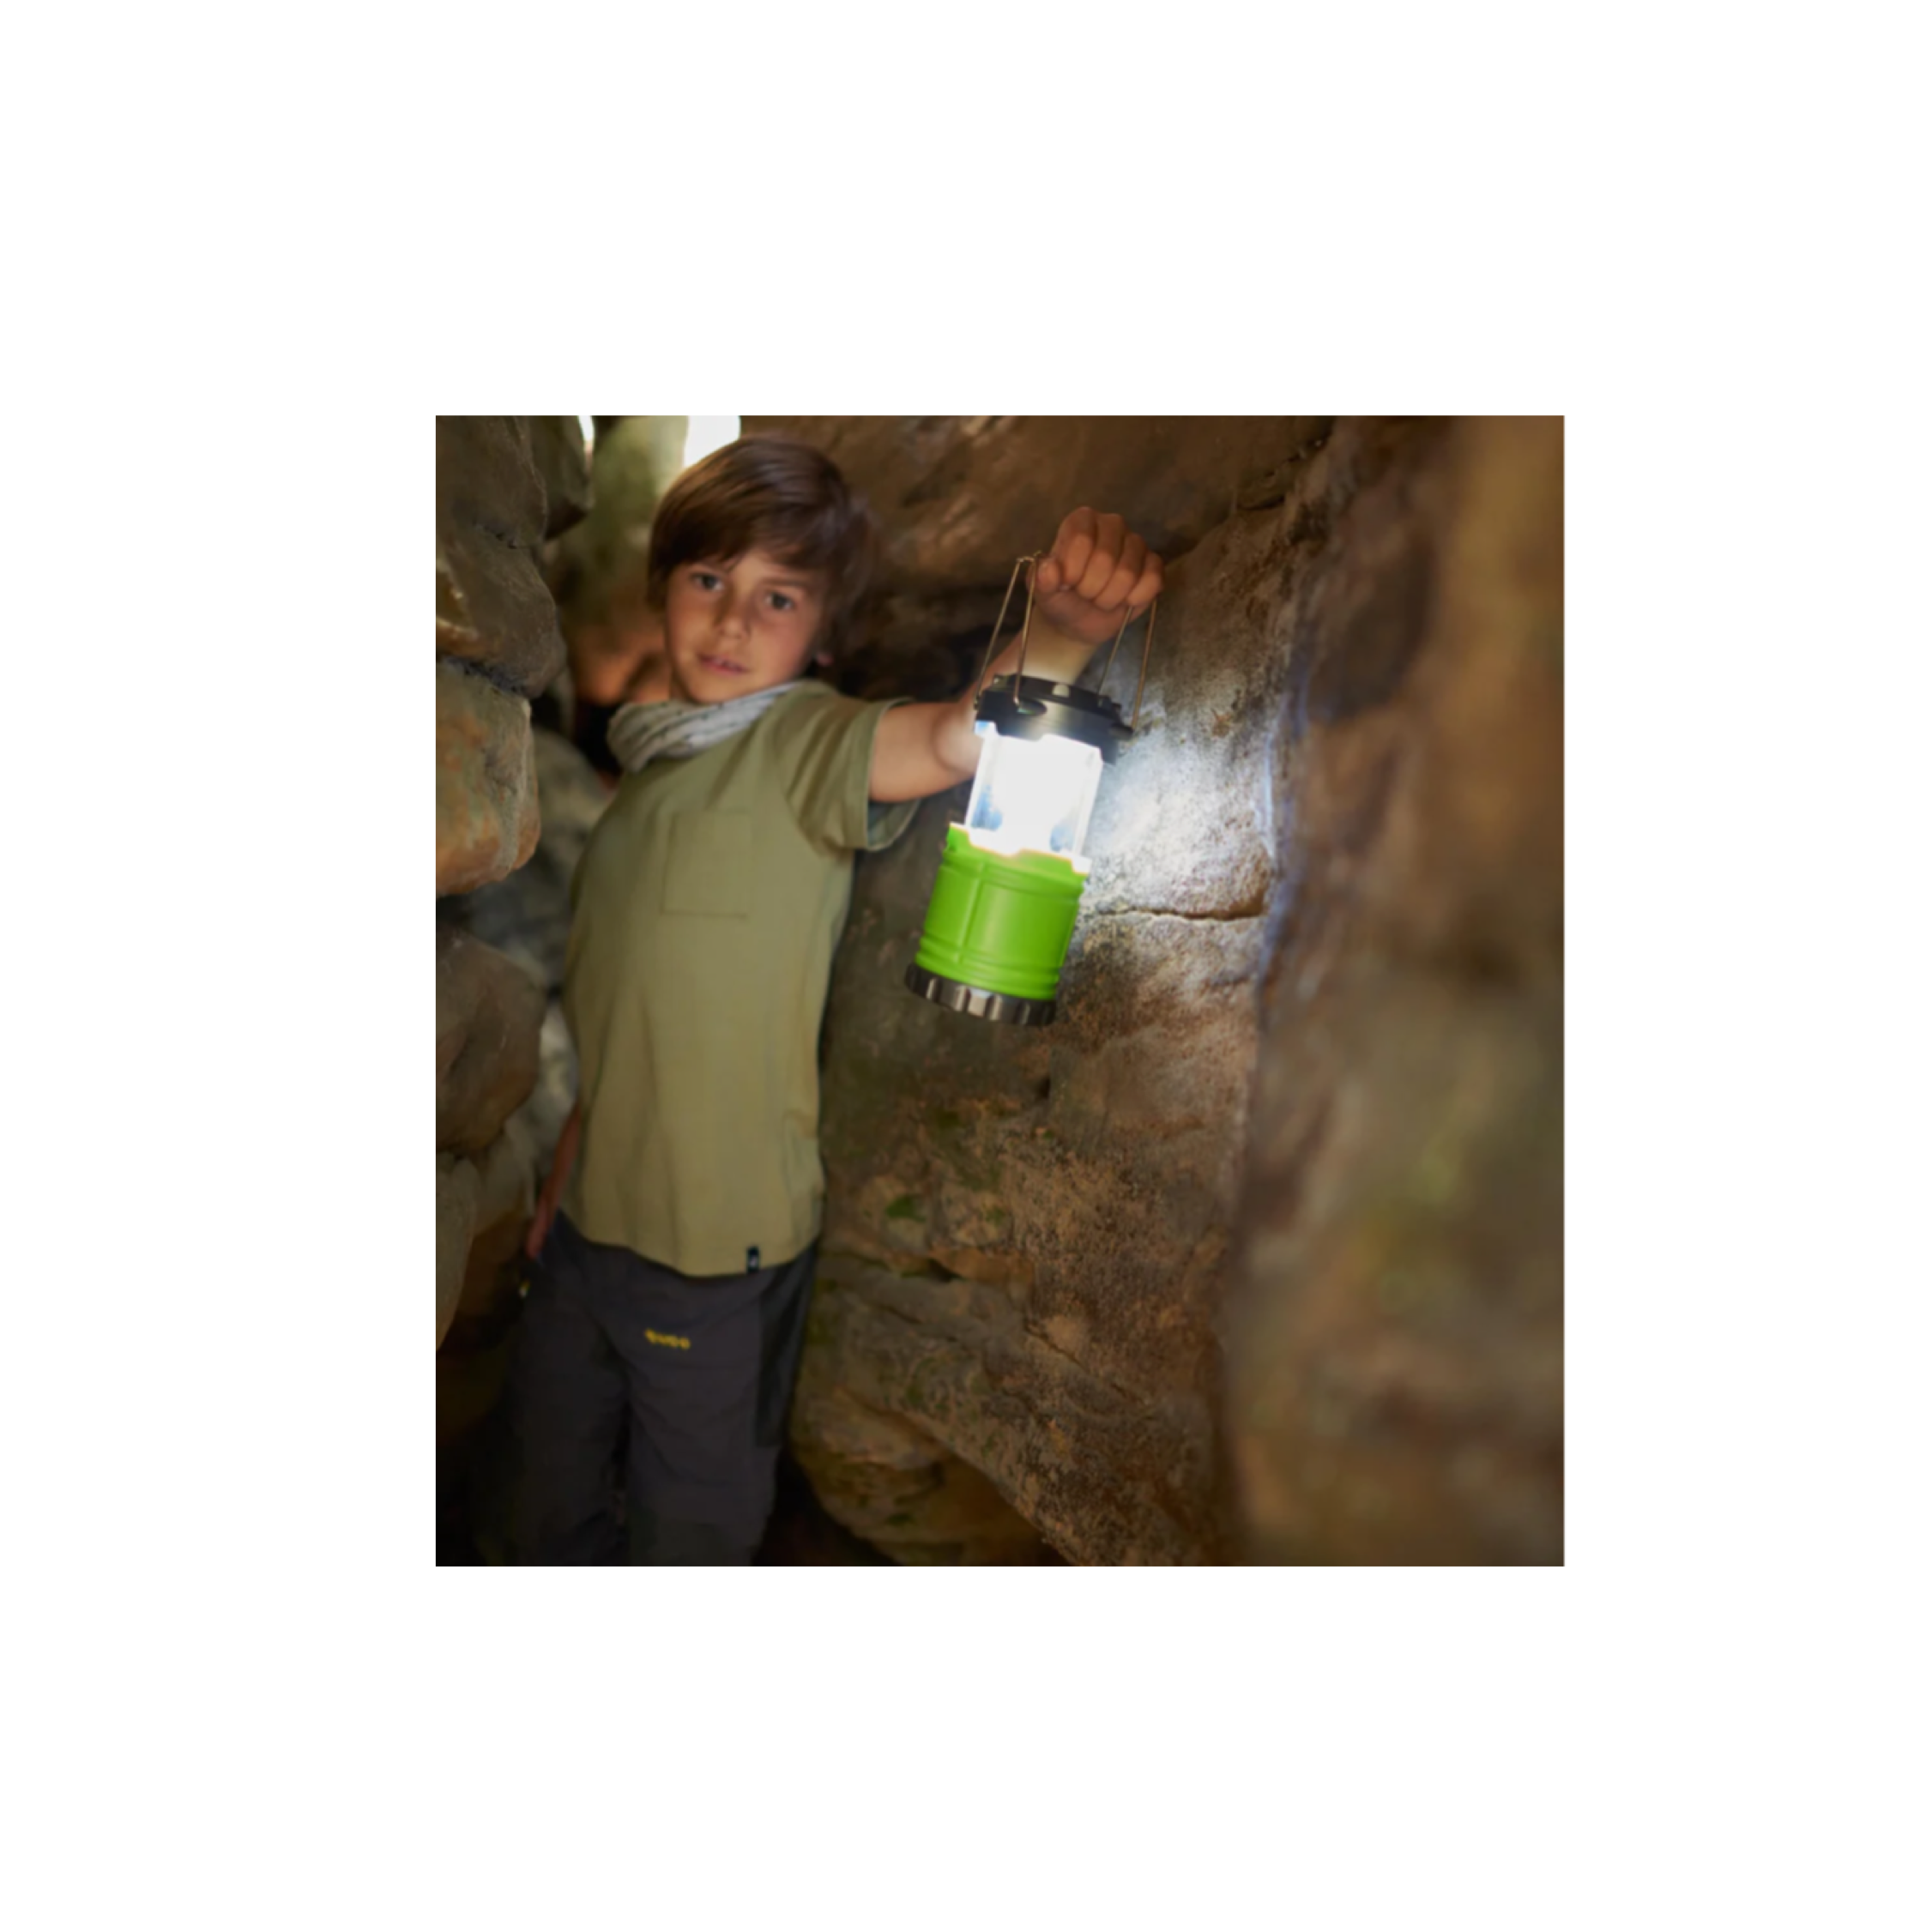 Haba Camping Lantern (Terra Kids)